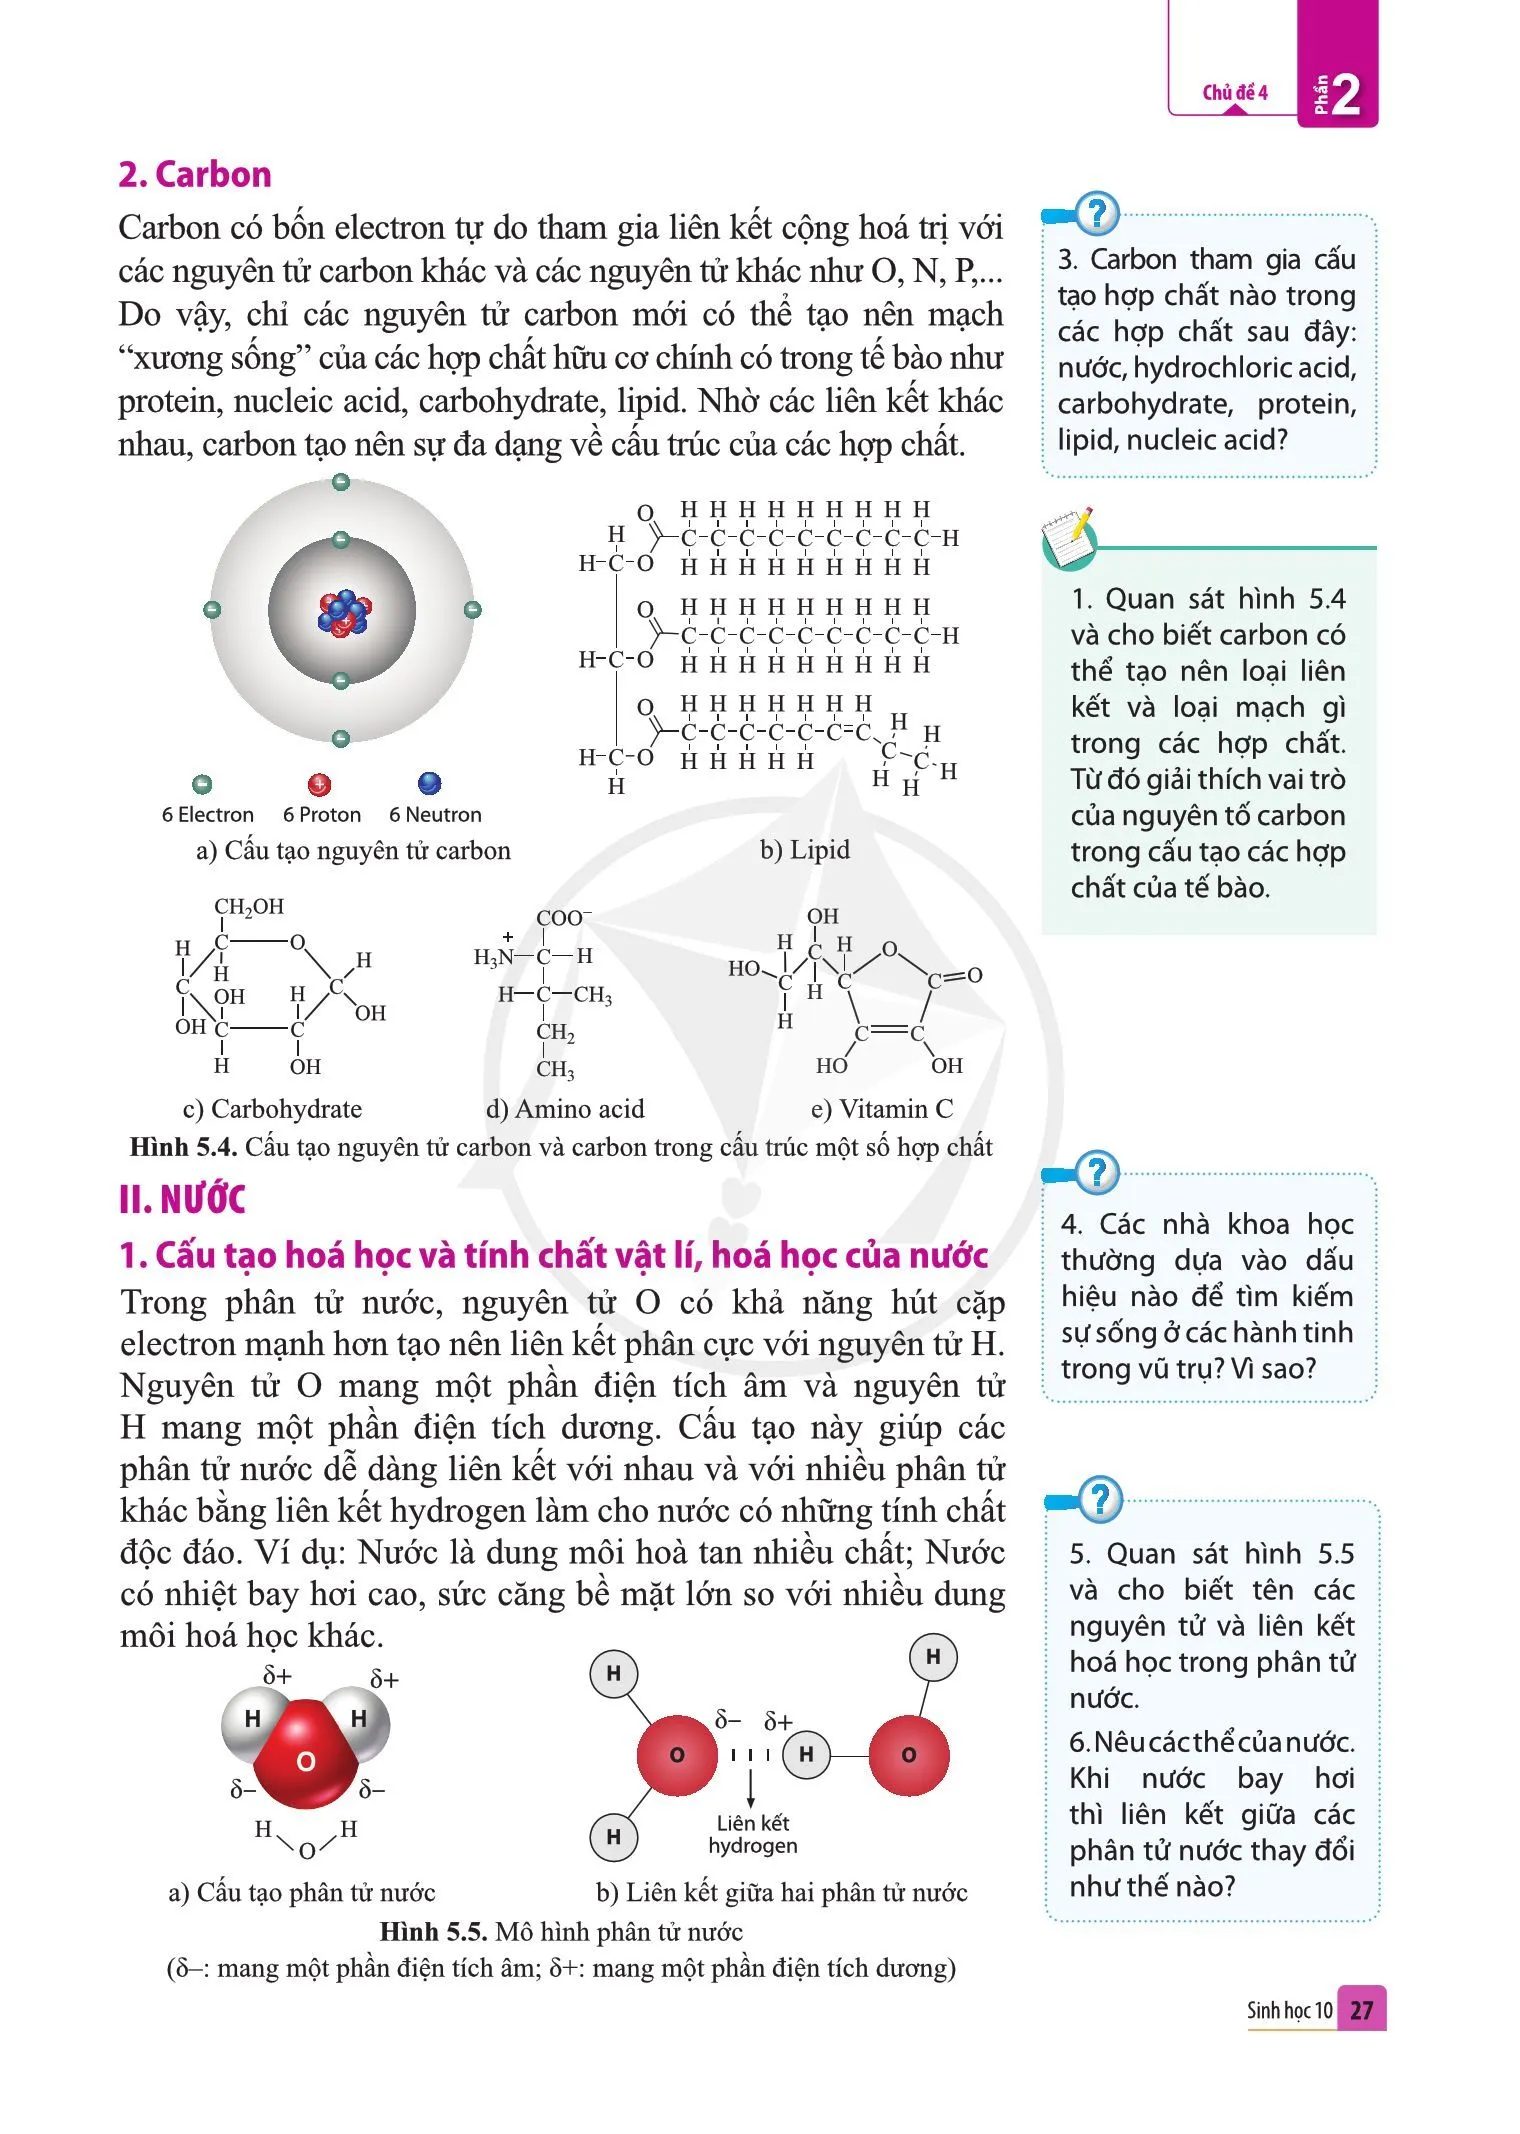 Bài 5. Các nguyên tố hoá học và nước